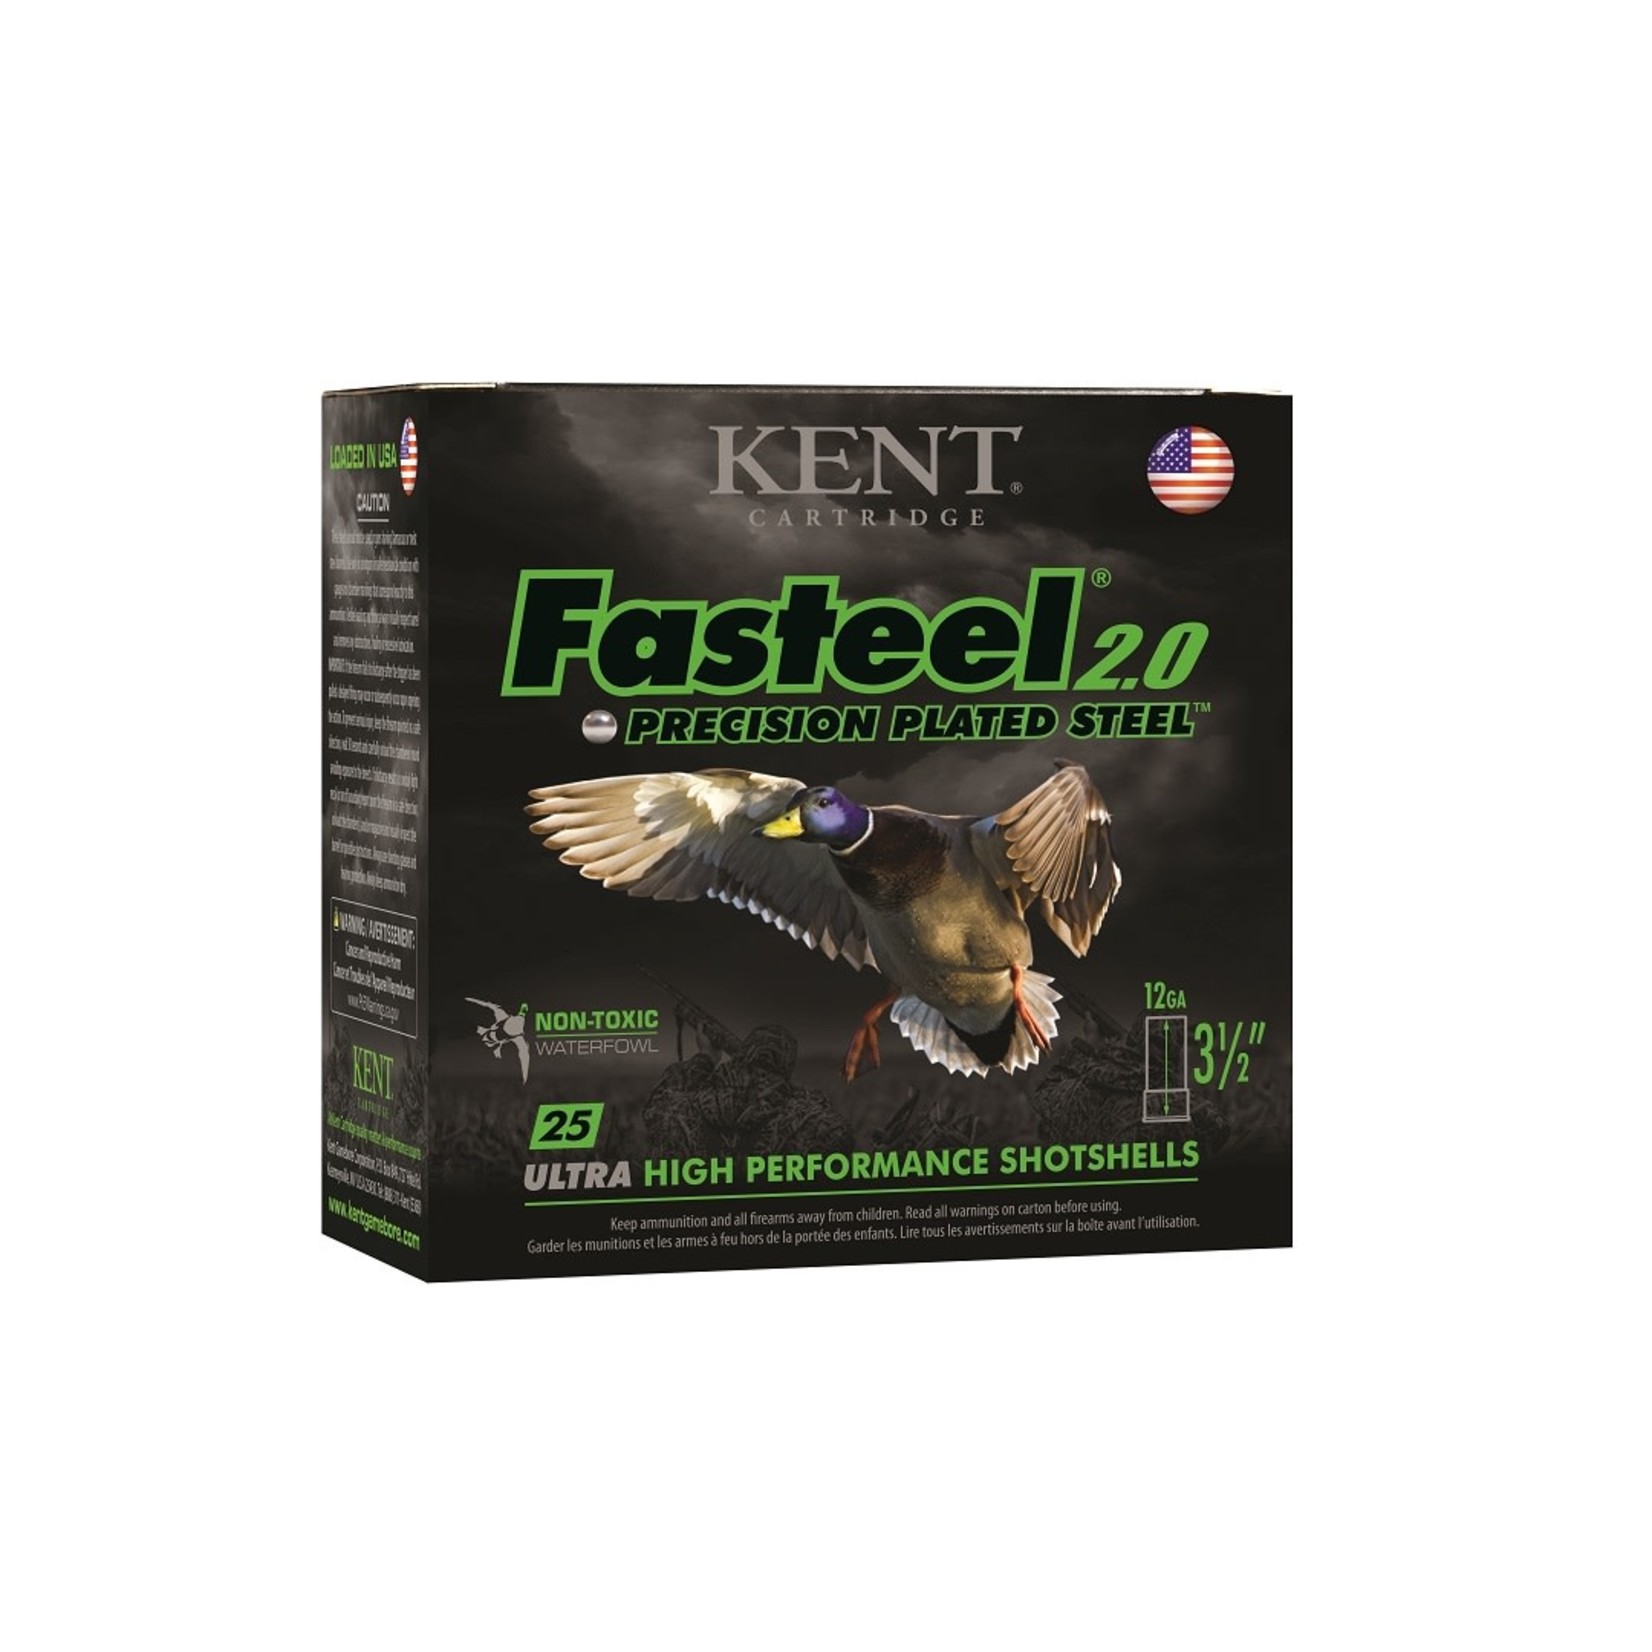 Kent Cartridge KENT 12 GA Fasteel 2.0 3.5" #3 1 3/8oz